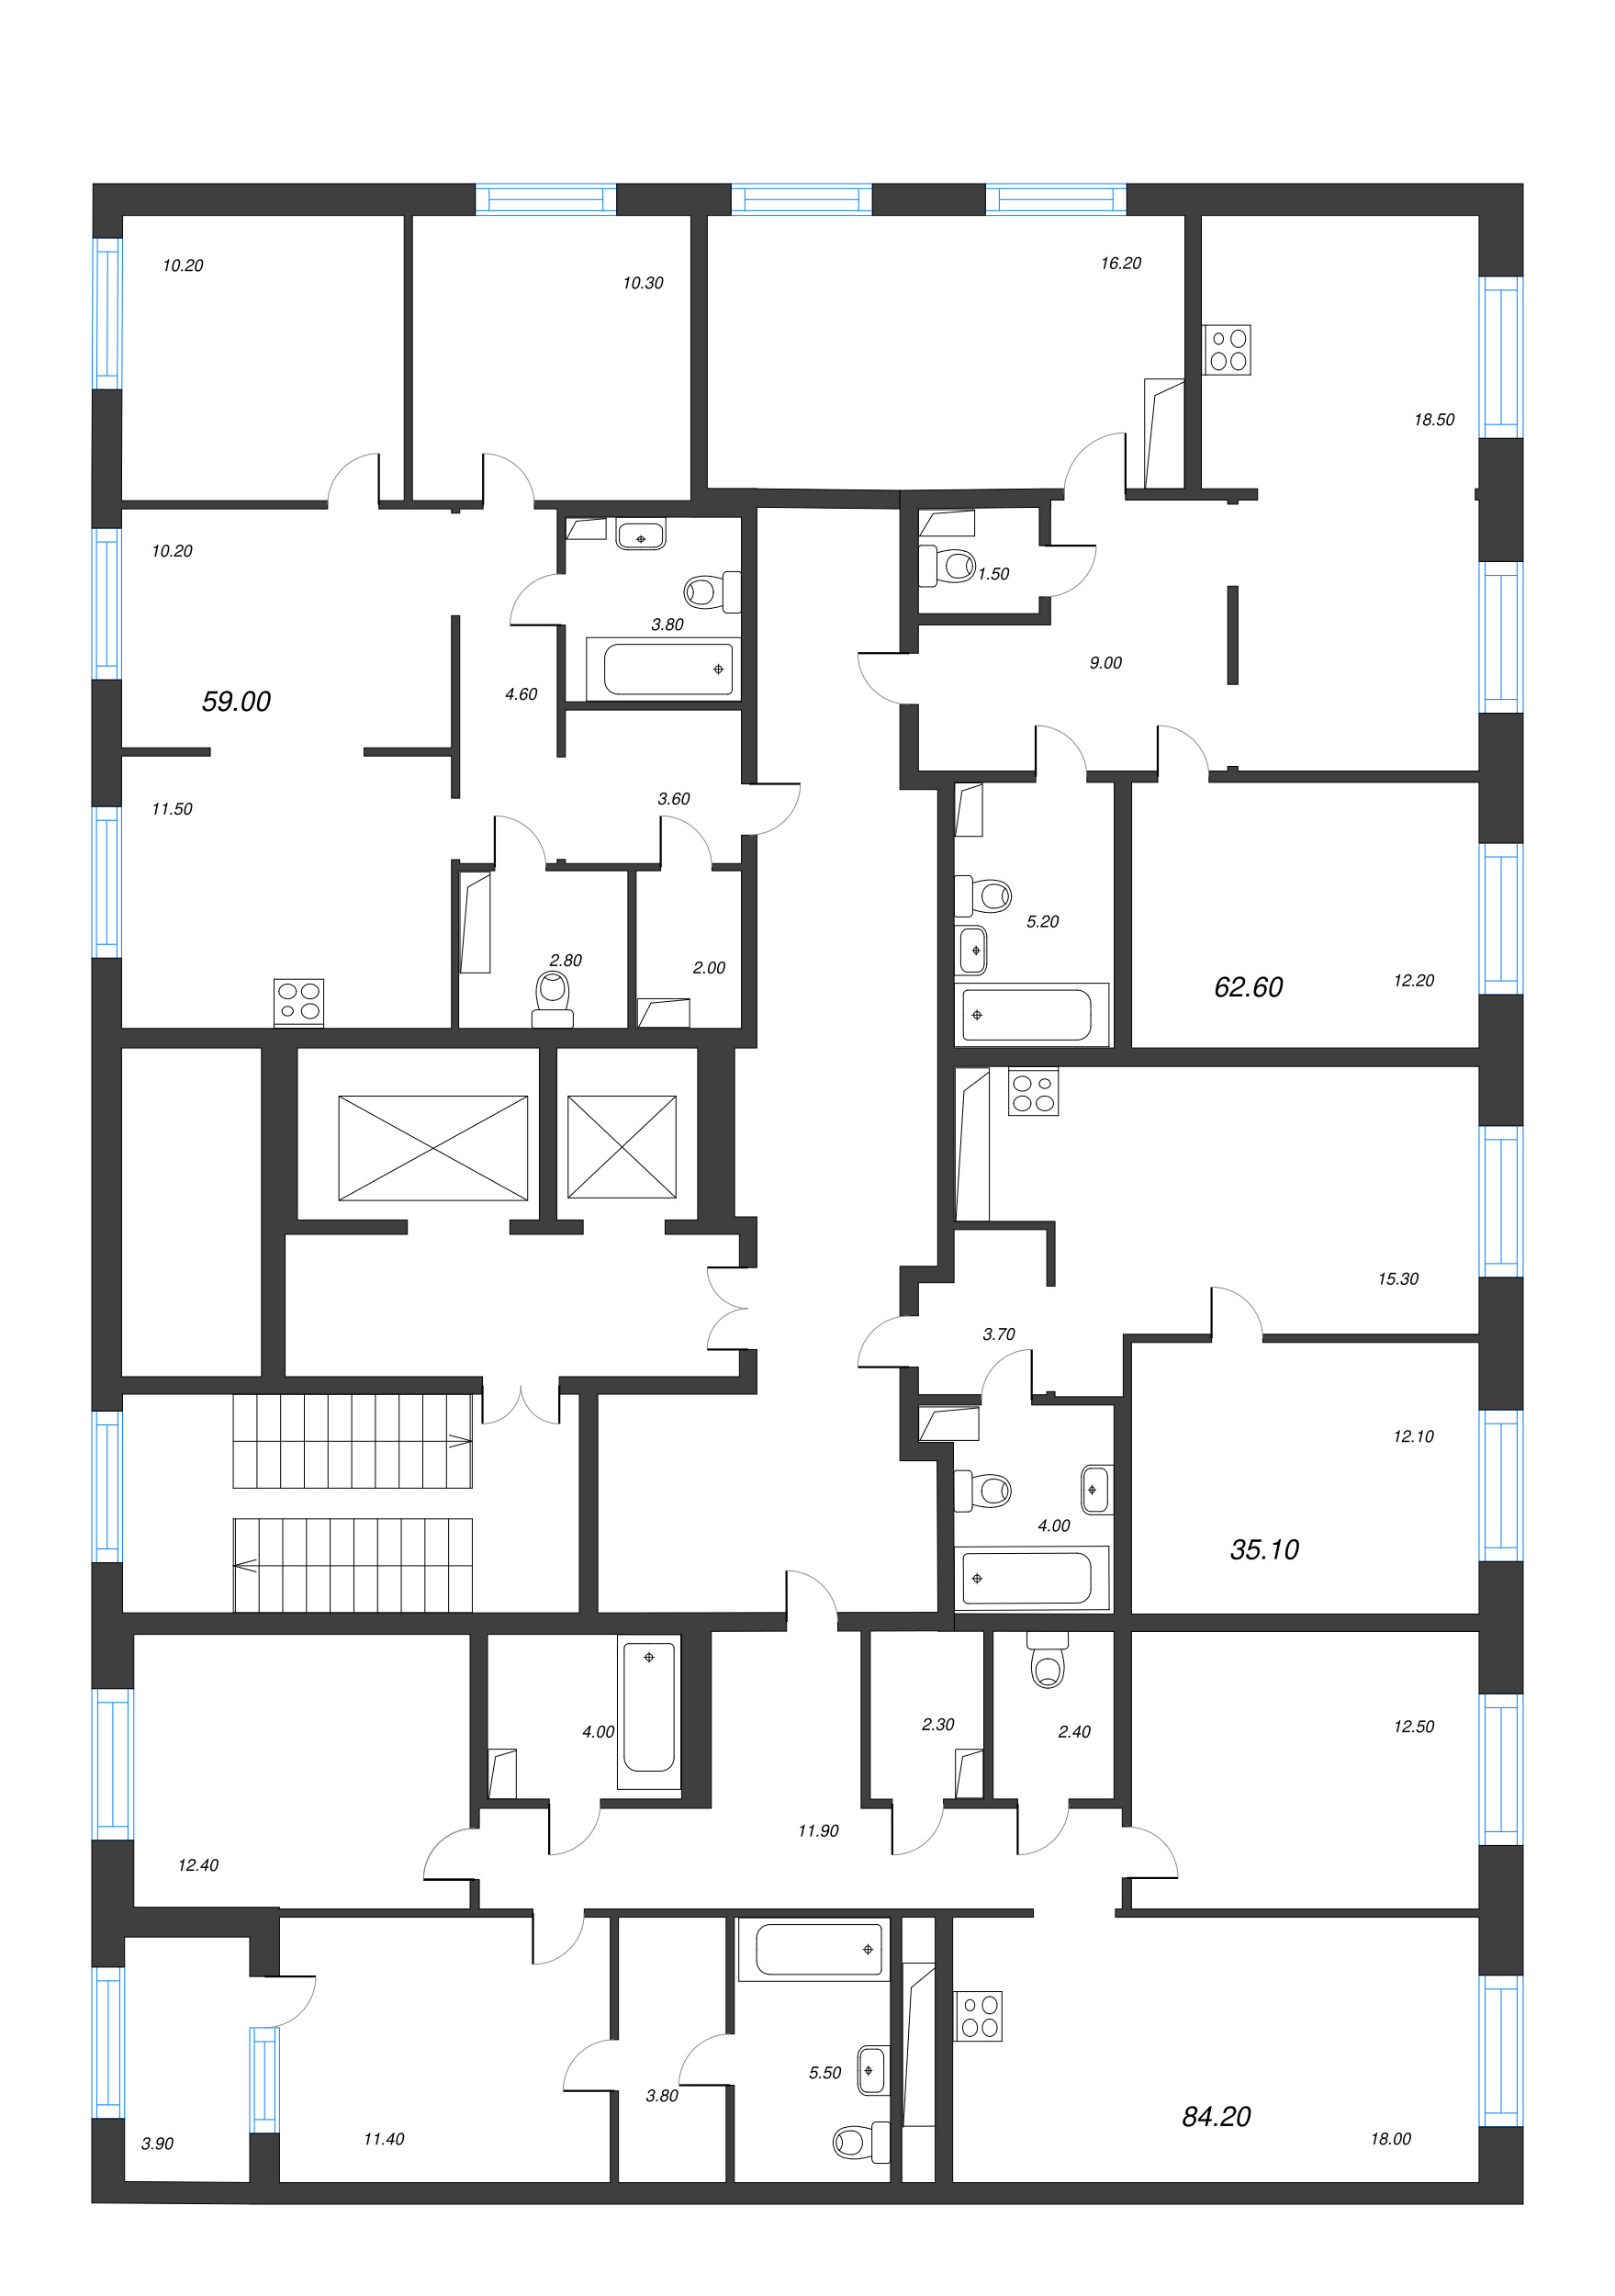 4-комнатная (Евро) квартира, 84.2 м² в ЖК "Струны" - планировка этажа